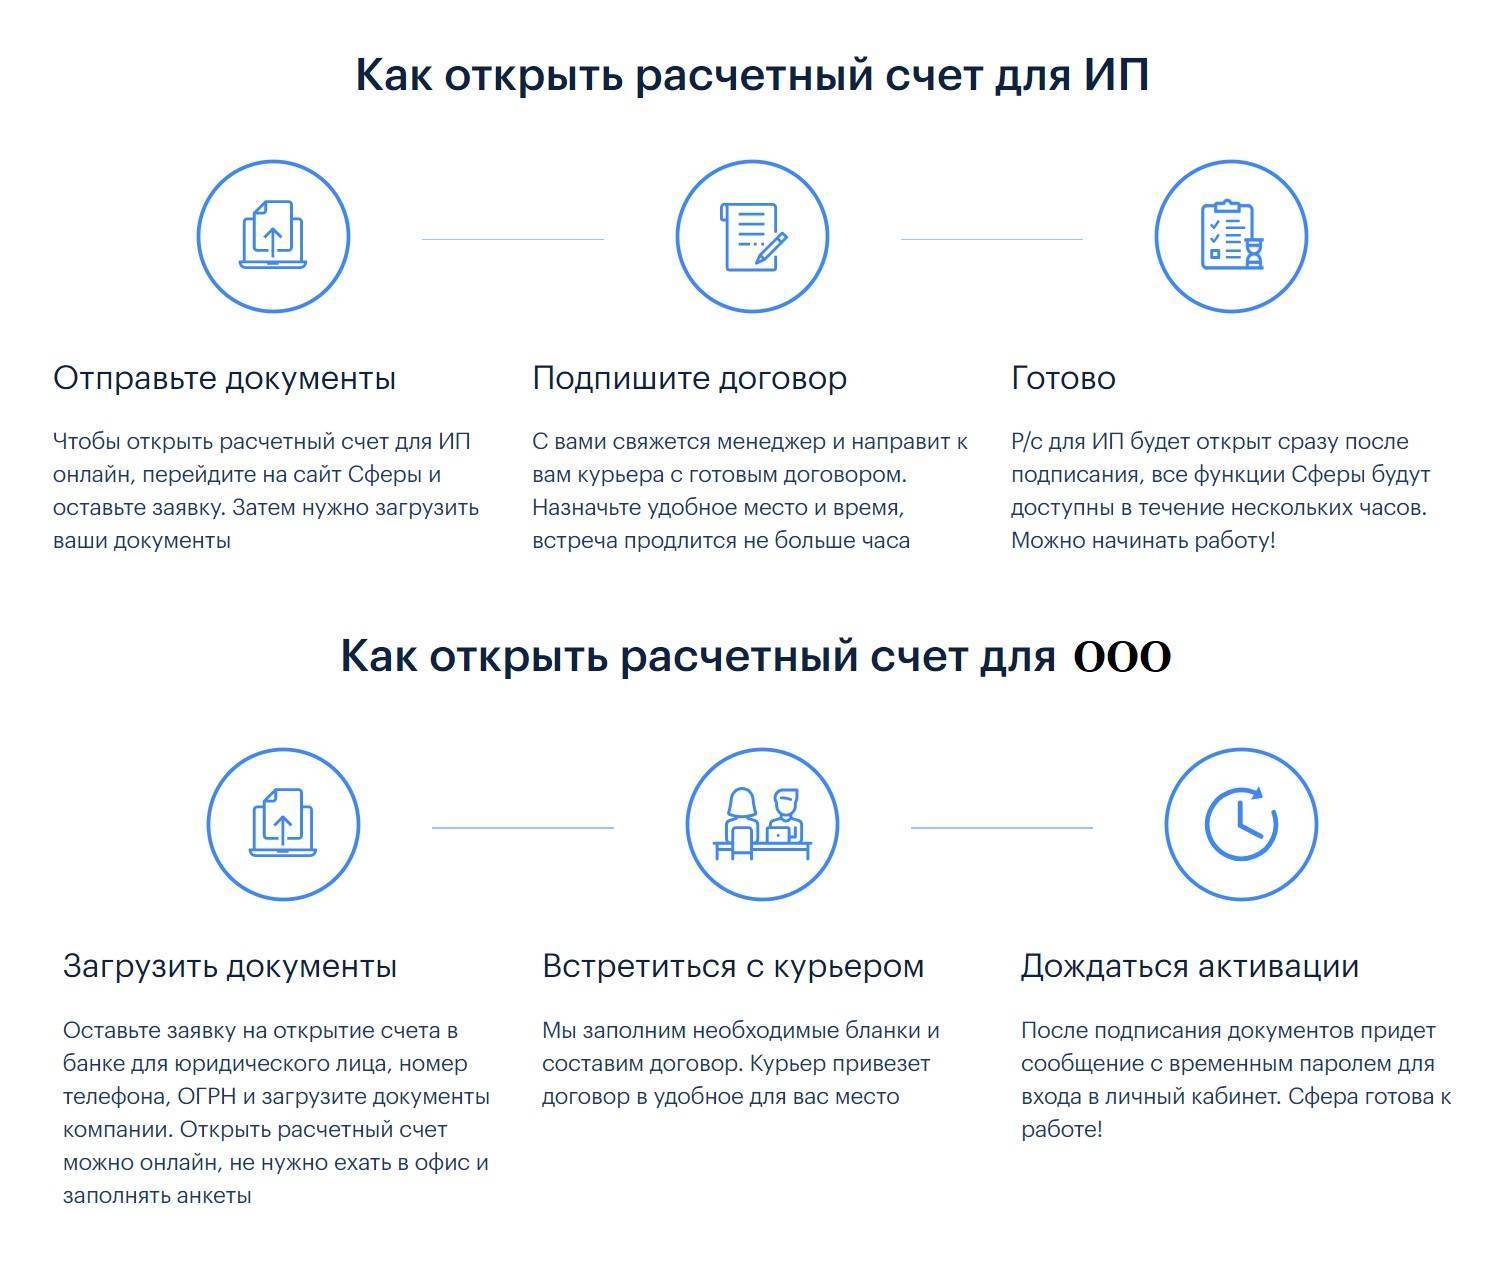 #оденьгахпросто: как выбрать тариф начинающему предпринимателю | банки.ру